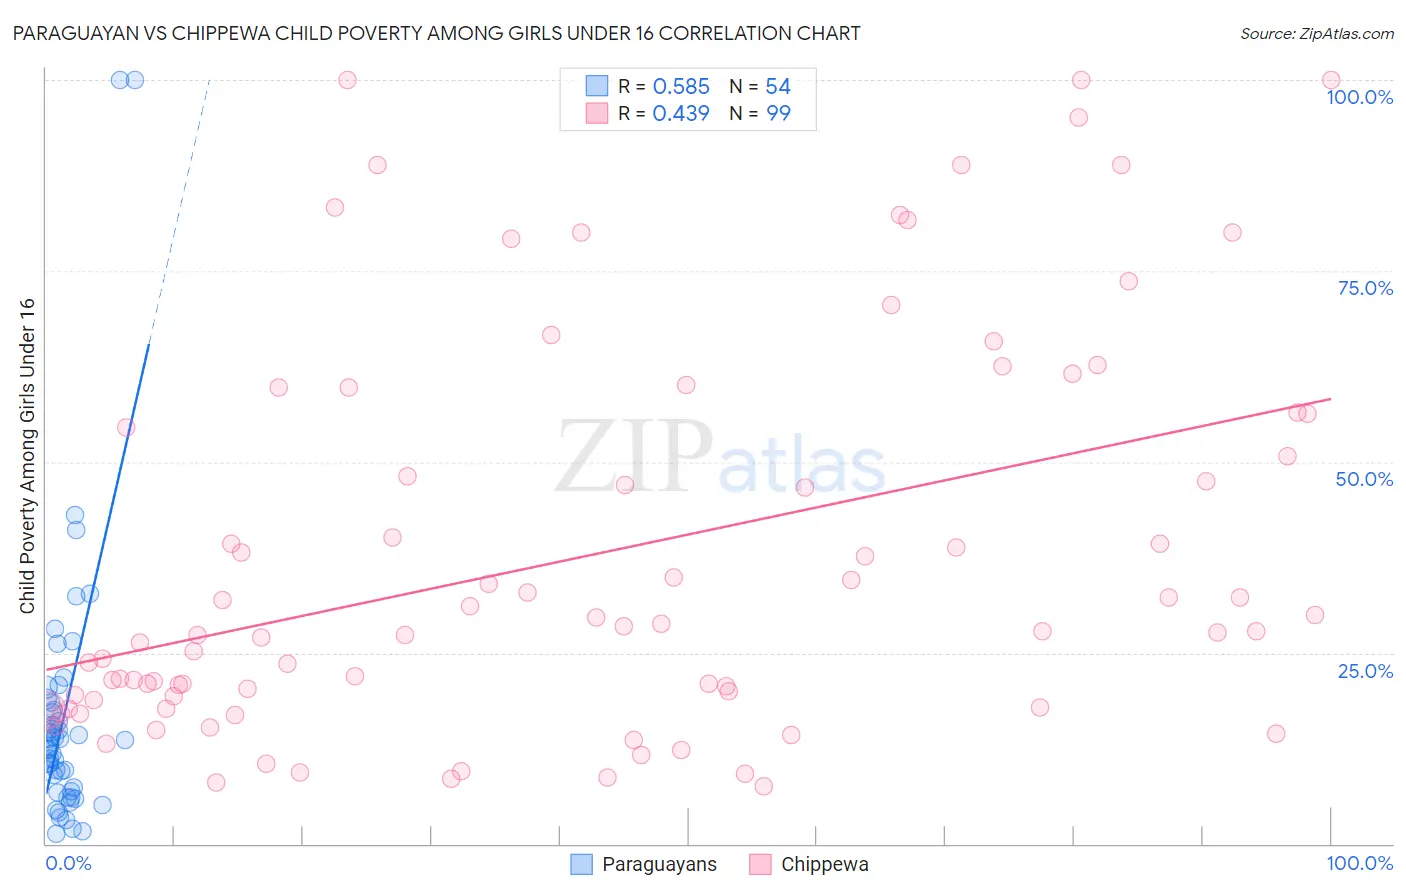 Paraguayan vs Chippewa Child Poverty Among Girls Under 16